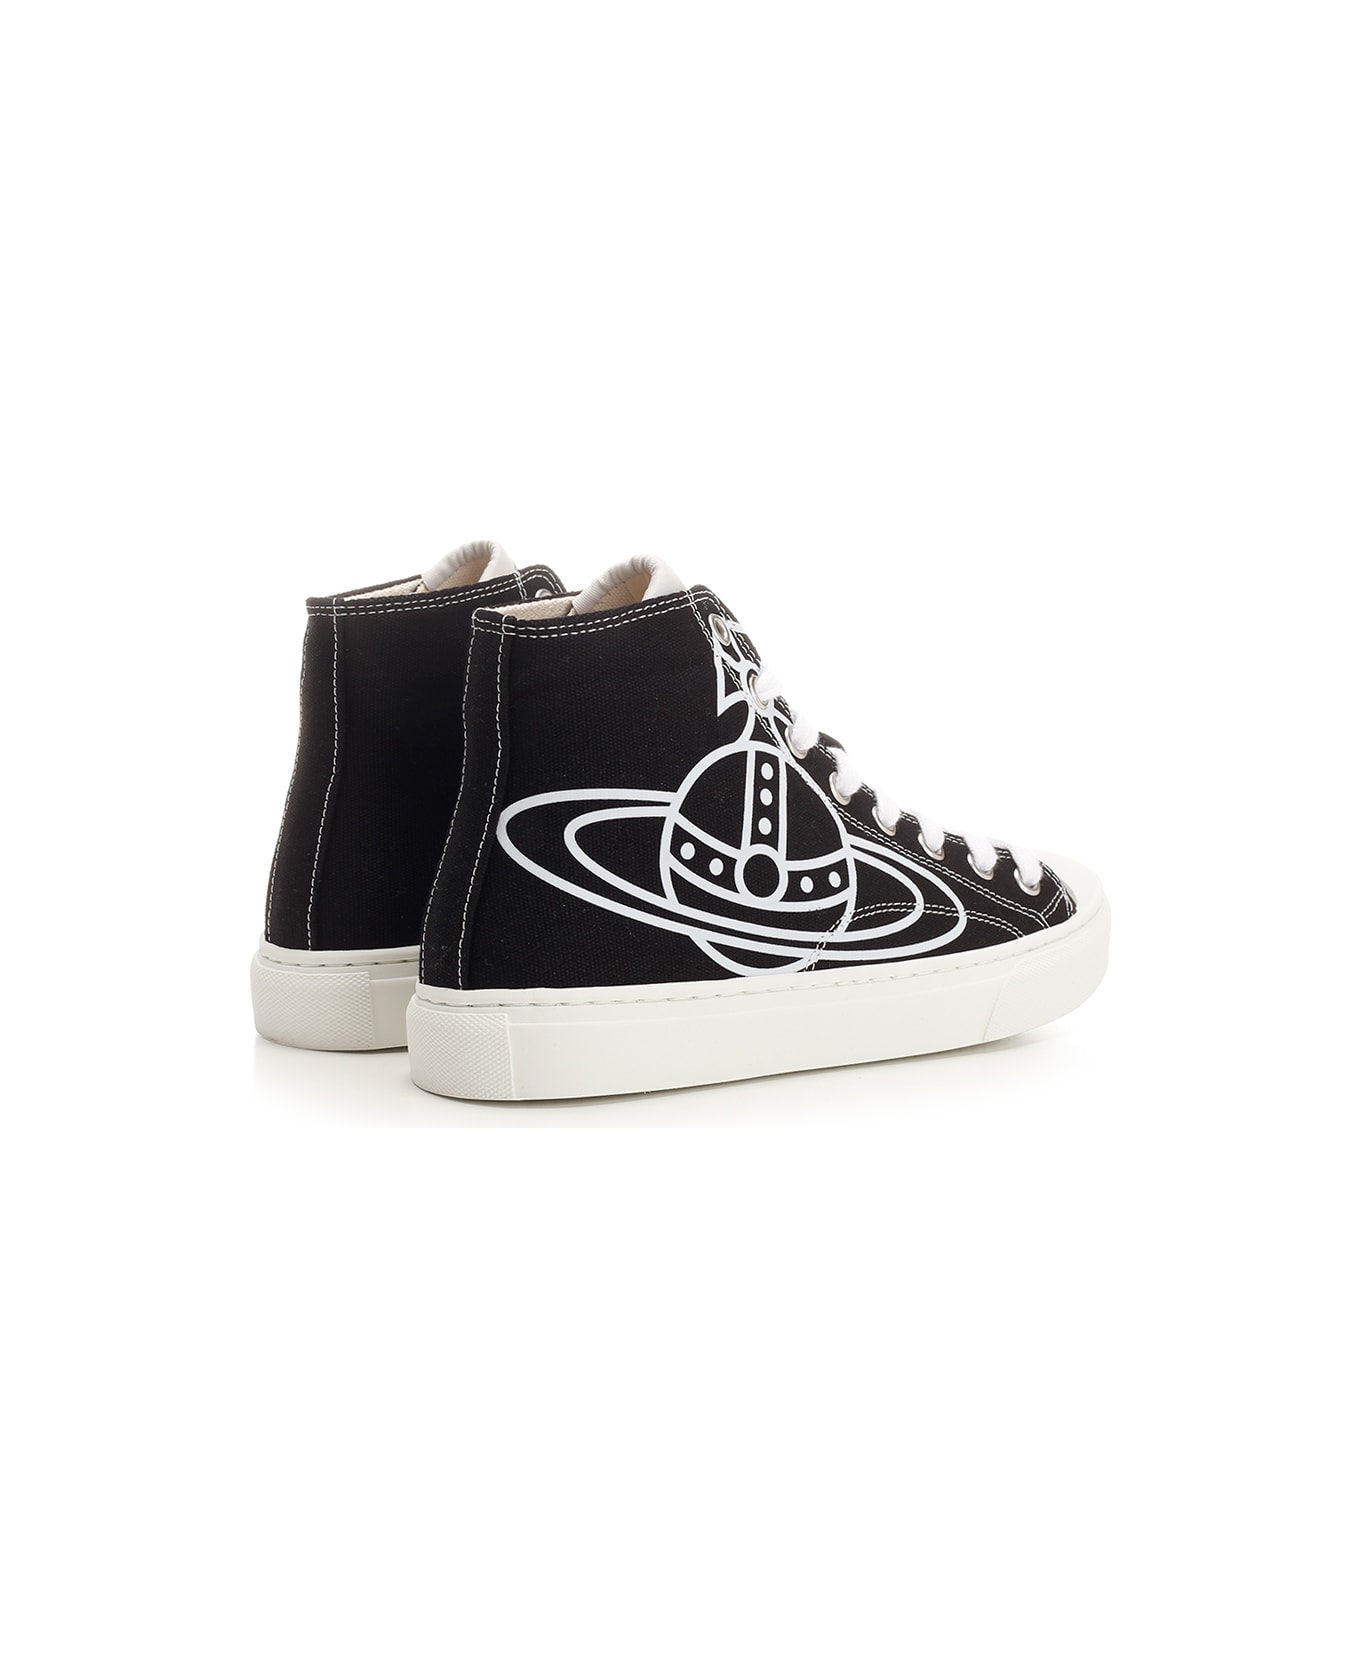 Vivienne Westwood 'plimsoll' High Top Sneakers - BLACK